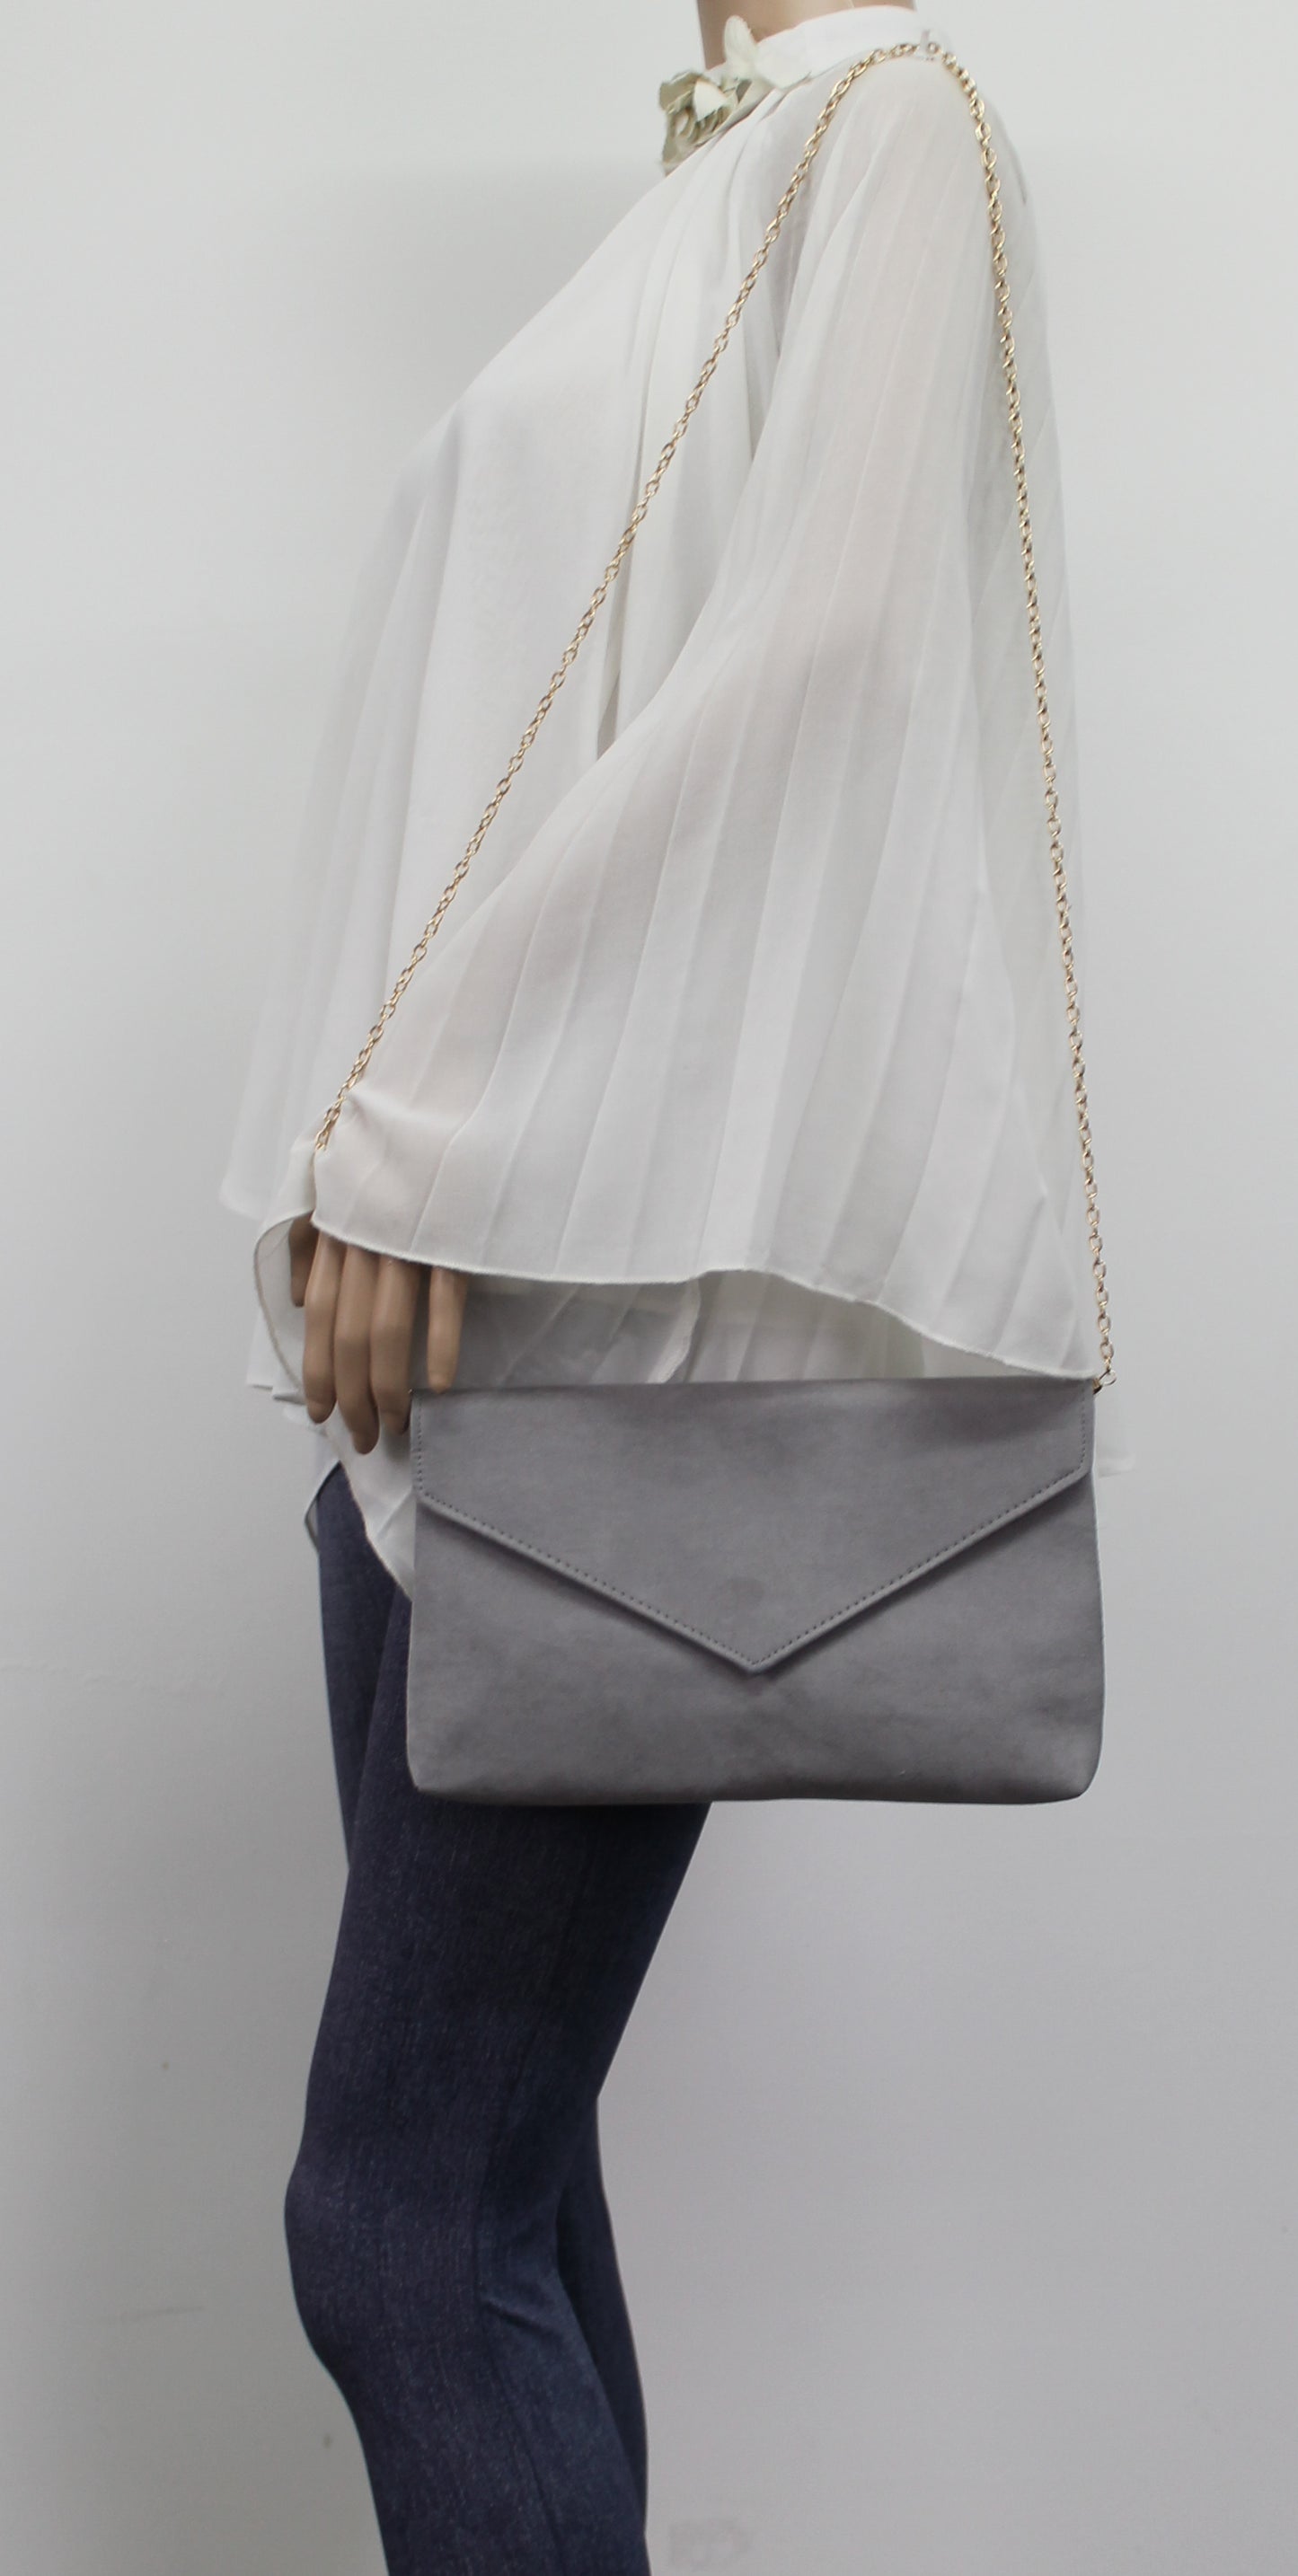 SWANKYSWANS Rosa Clutch Bag Grey Cute Cheap Clutch Bag For Weddings School and Work